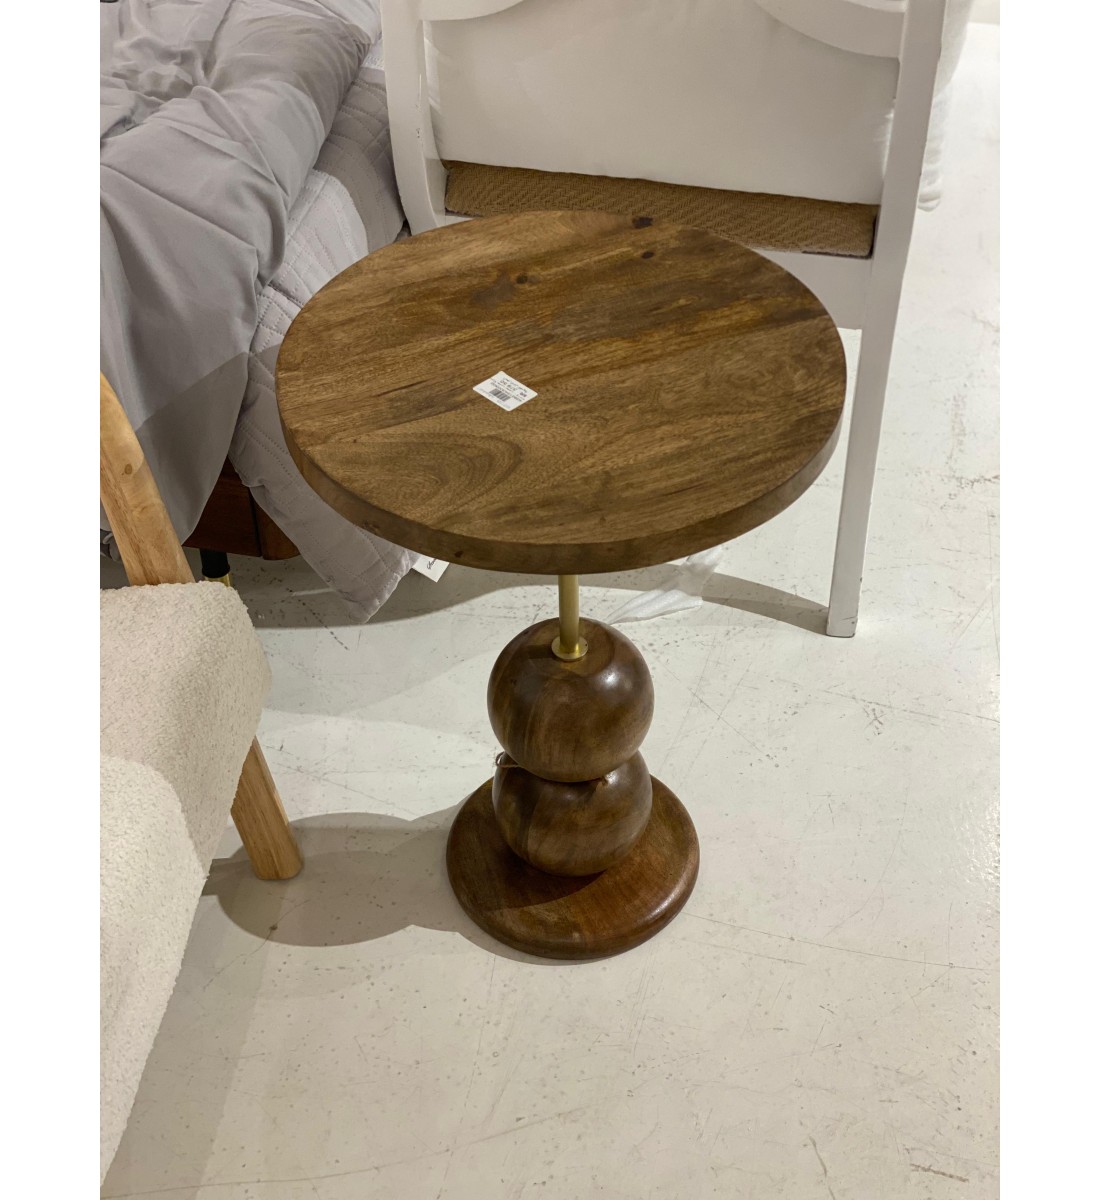 طاولة هندي خشب بعامود حديد ذهبي - مقاس 40×40×55سم